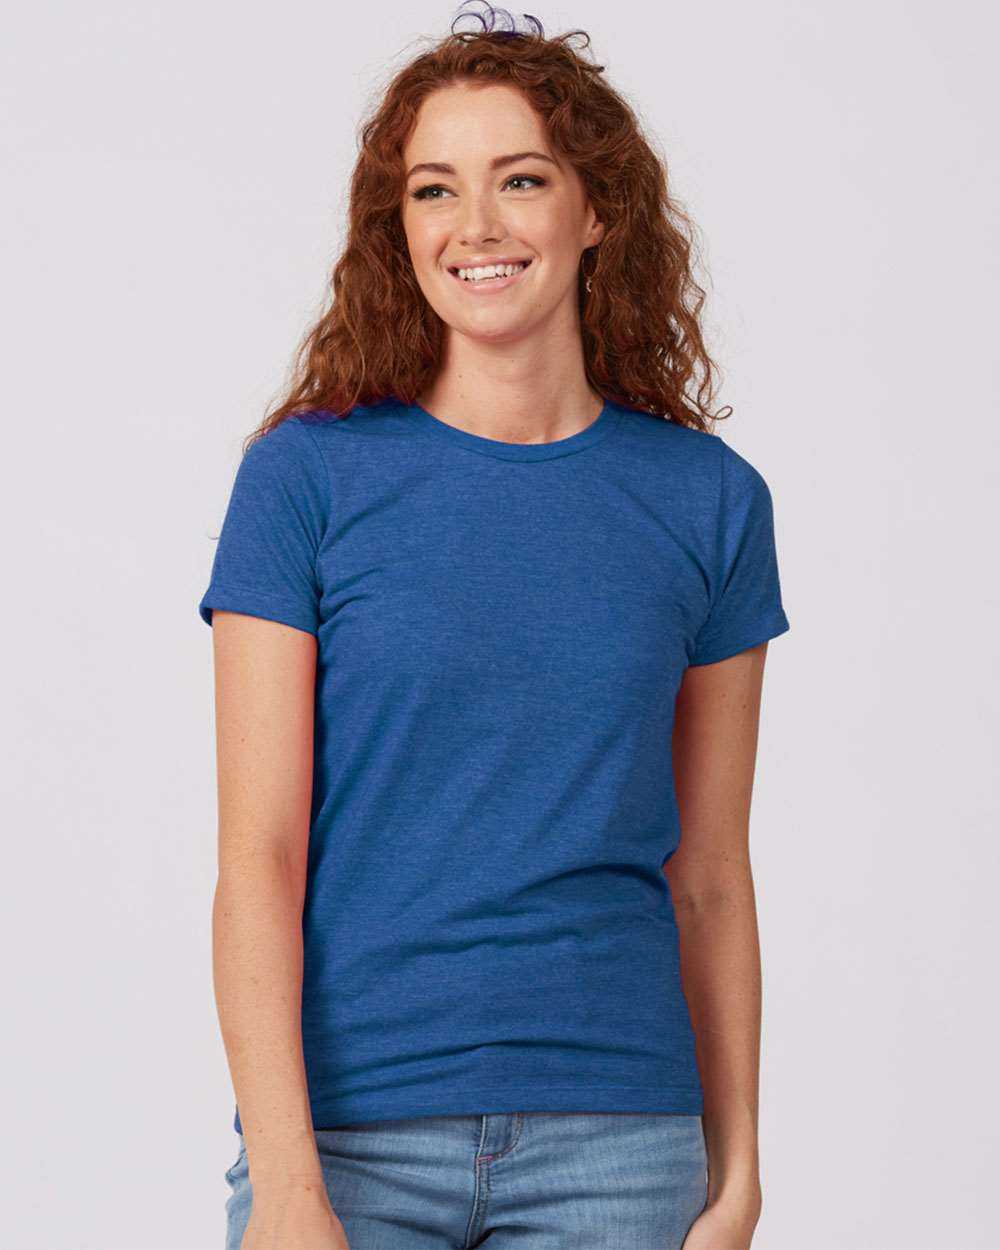 Tultex 542 Women's Premium Cotton Blend T-Shirt - Royal Heather - HIT a Double